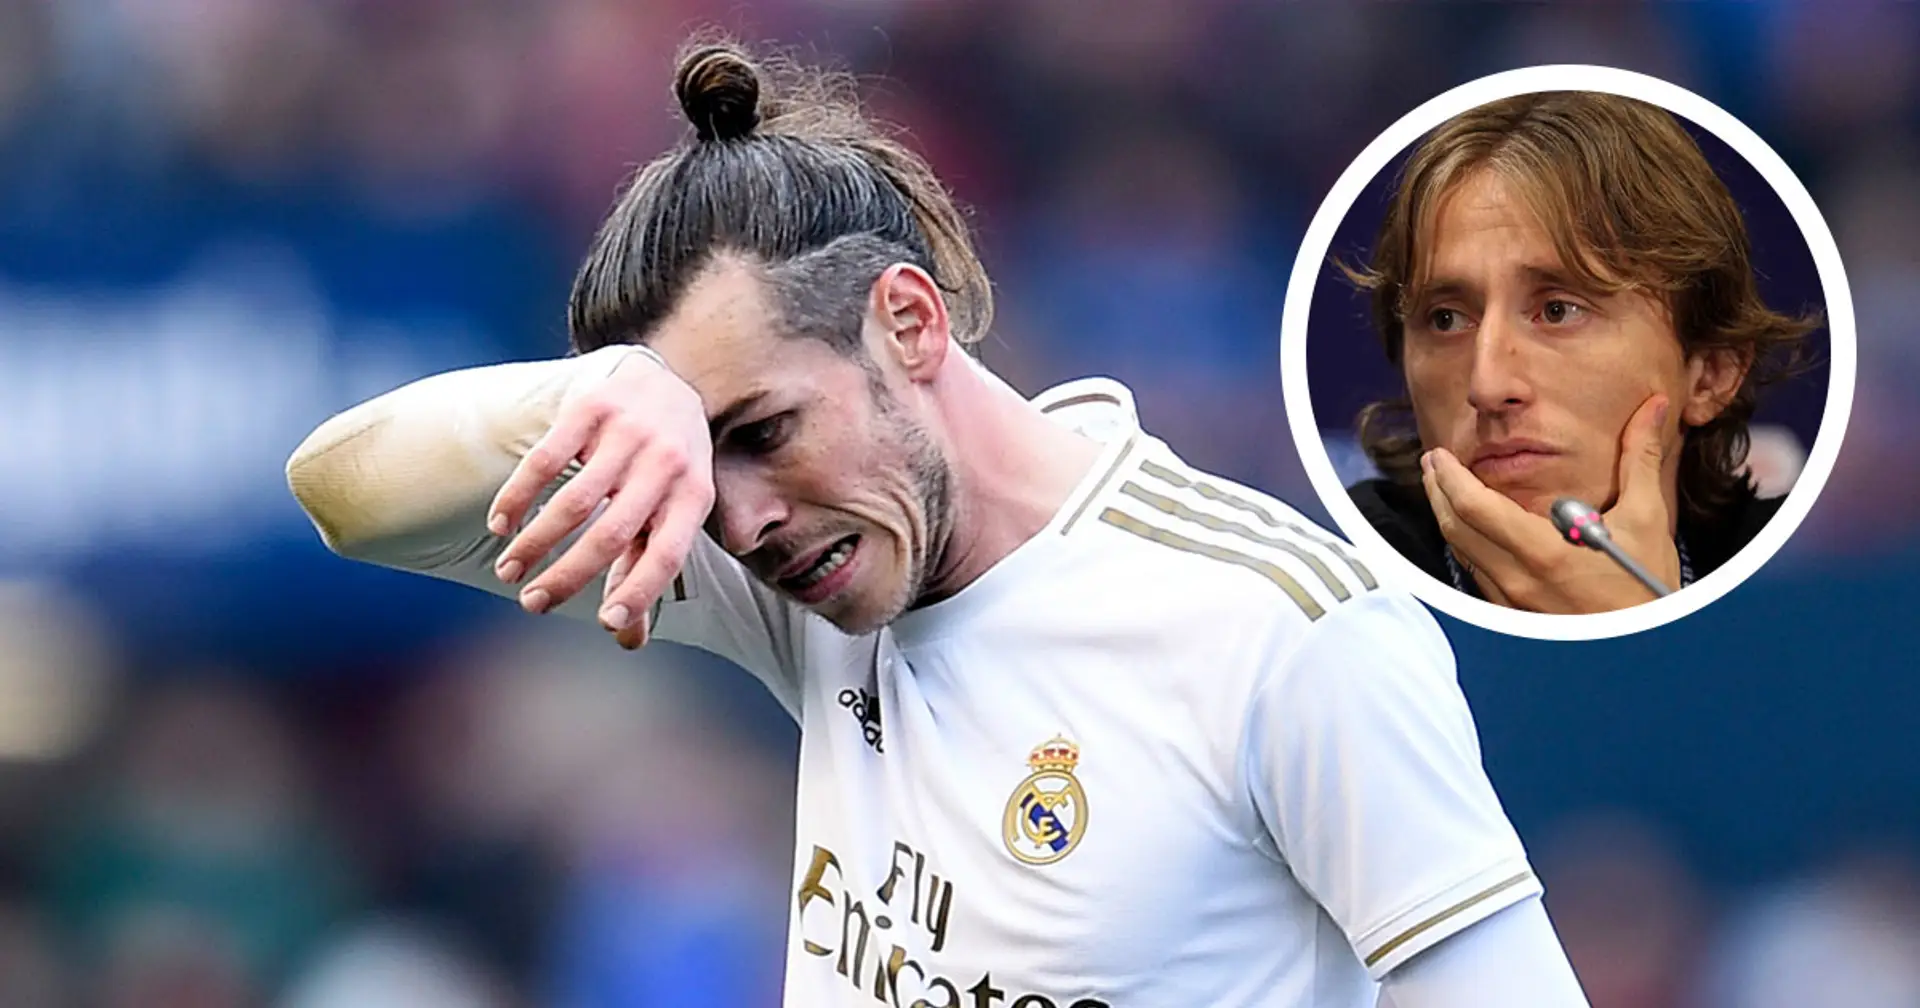 'No ha sido una temporada fácil para él': Modric sobre la situación de Bale en el Madrid